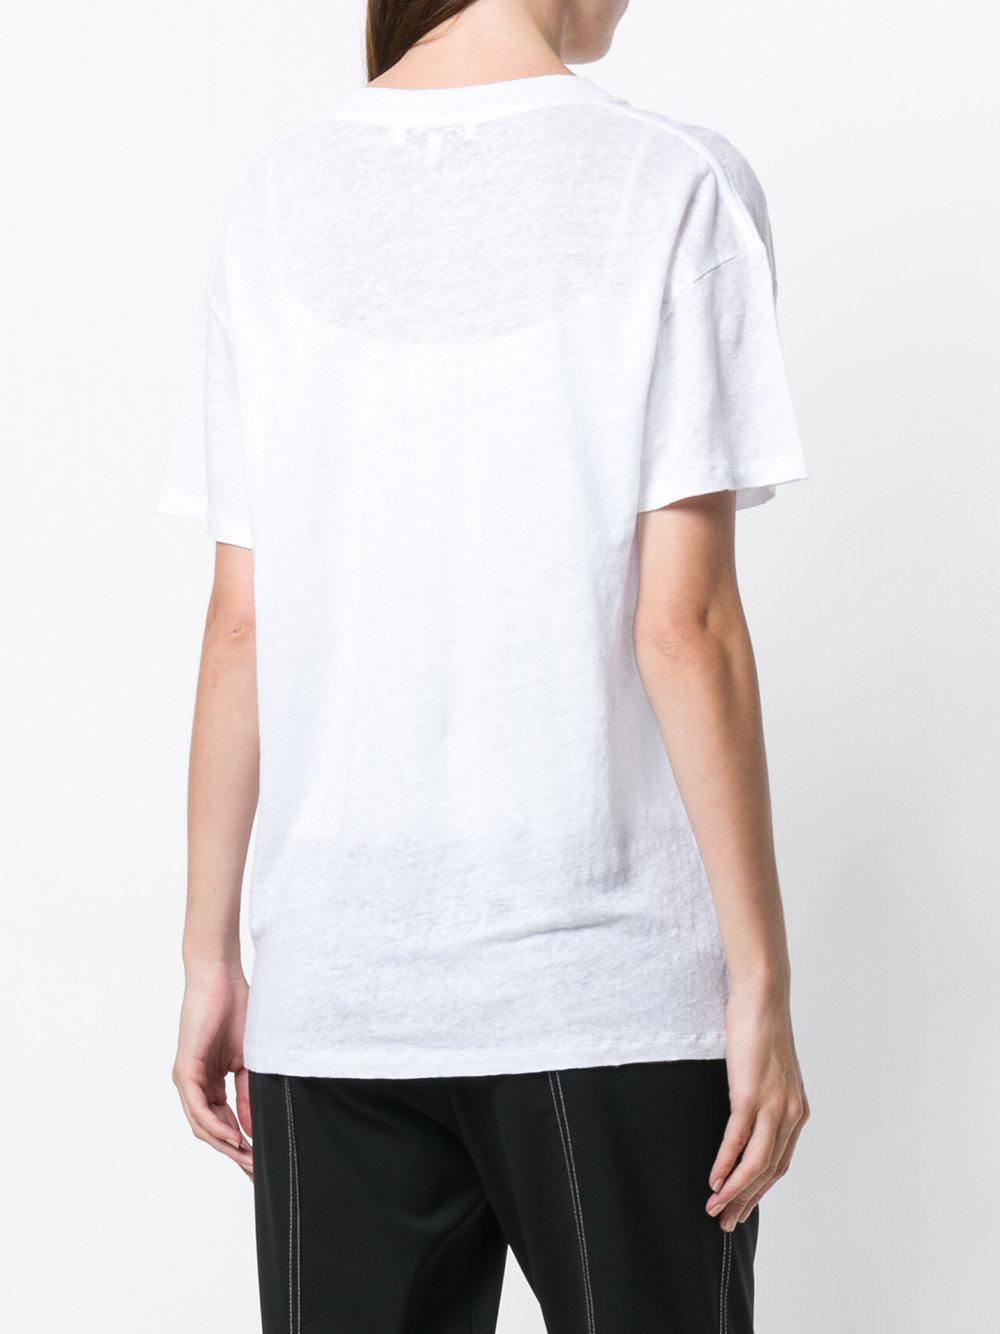 IRO Linen Uneven Neckline T-shirt in White - Lyst